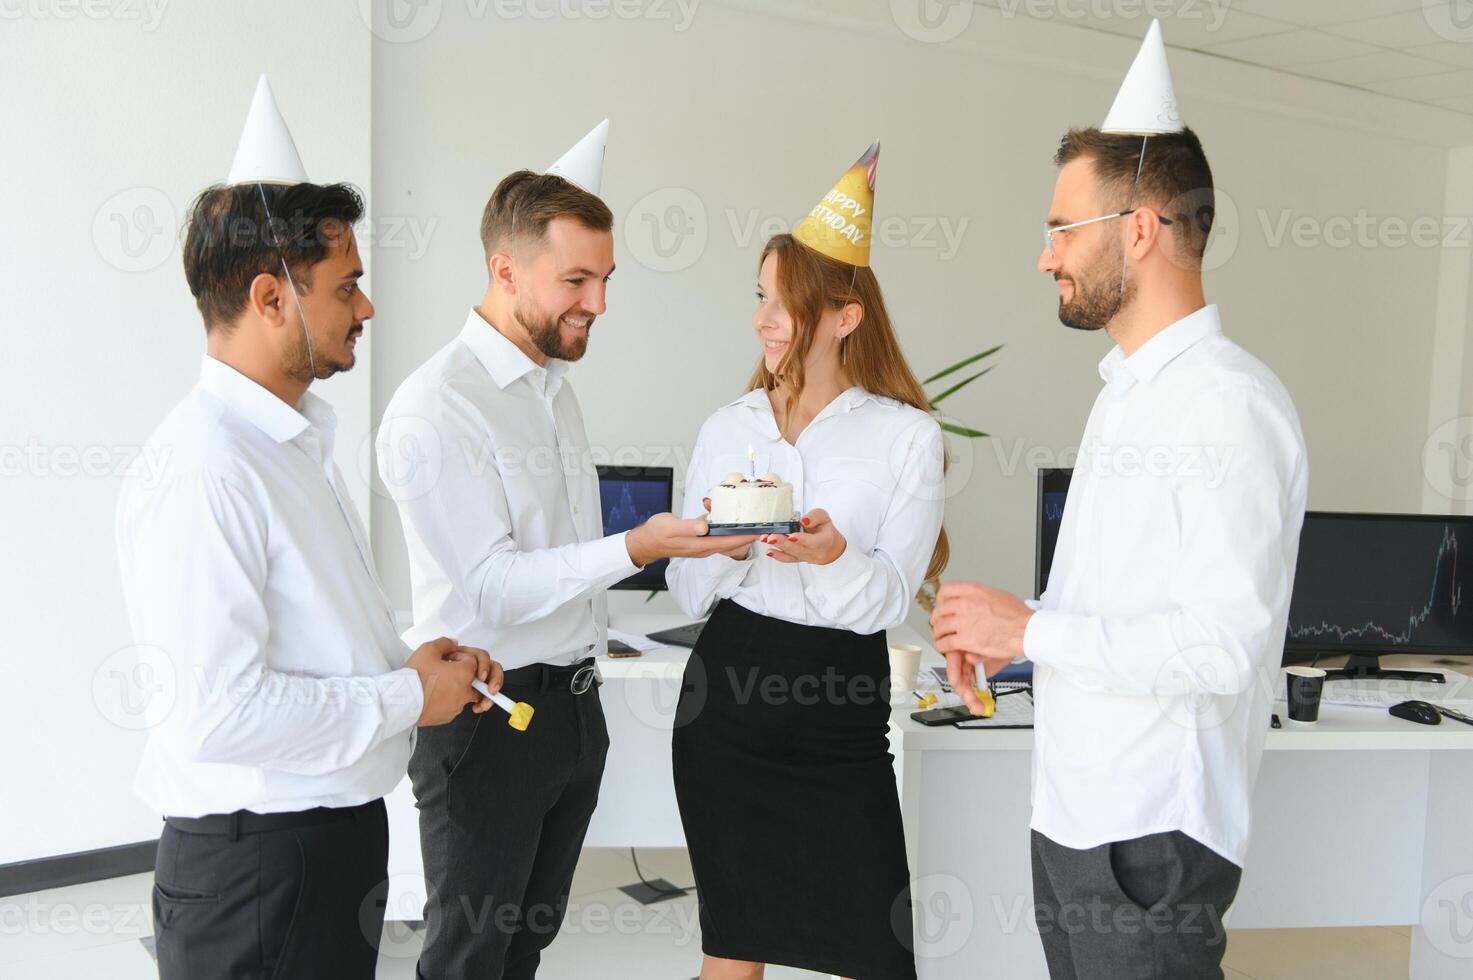 corporativo festa e pessoas conceito - feliz equipe com bolo a comemorar colega aniversário às escritório foto